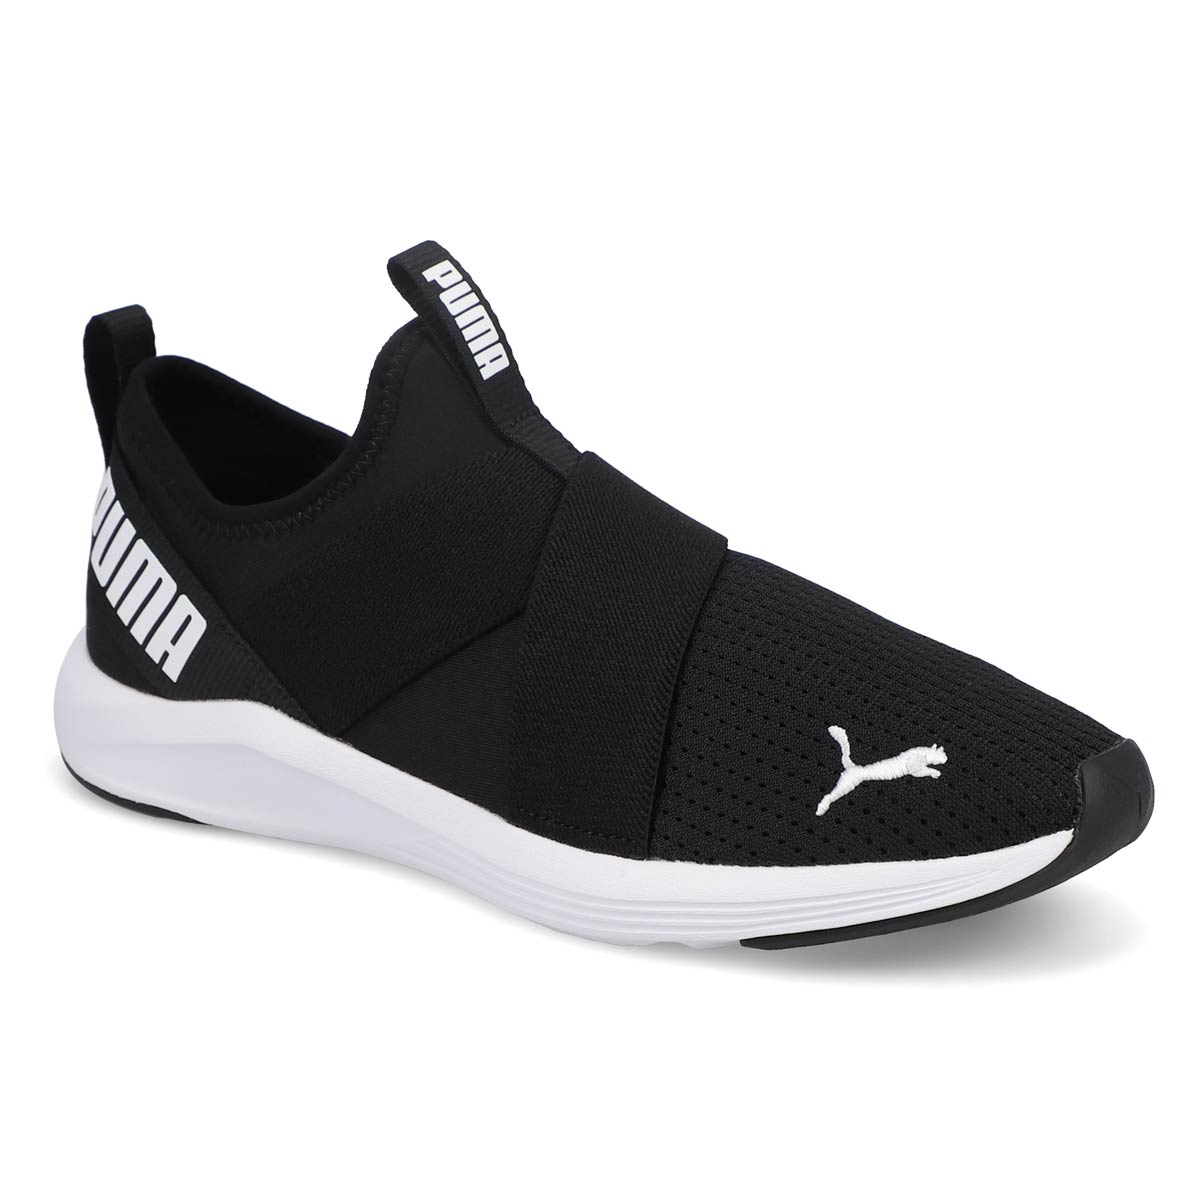 Women's Prowl Slip On Sneaker - Black/ White